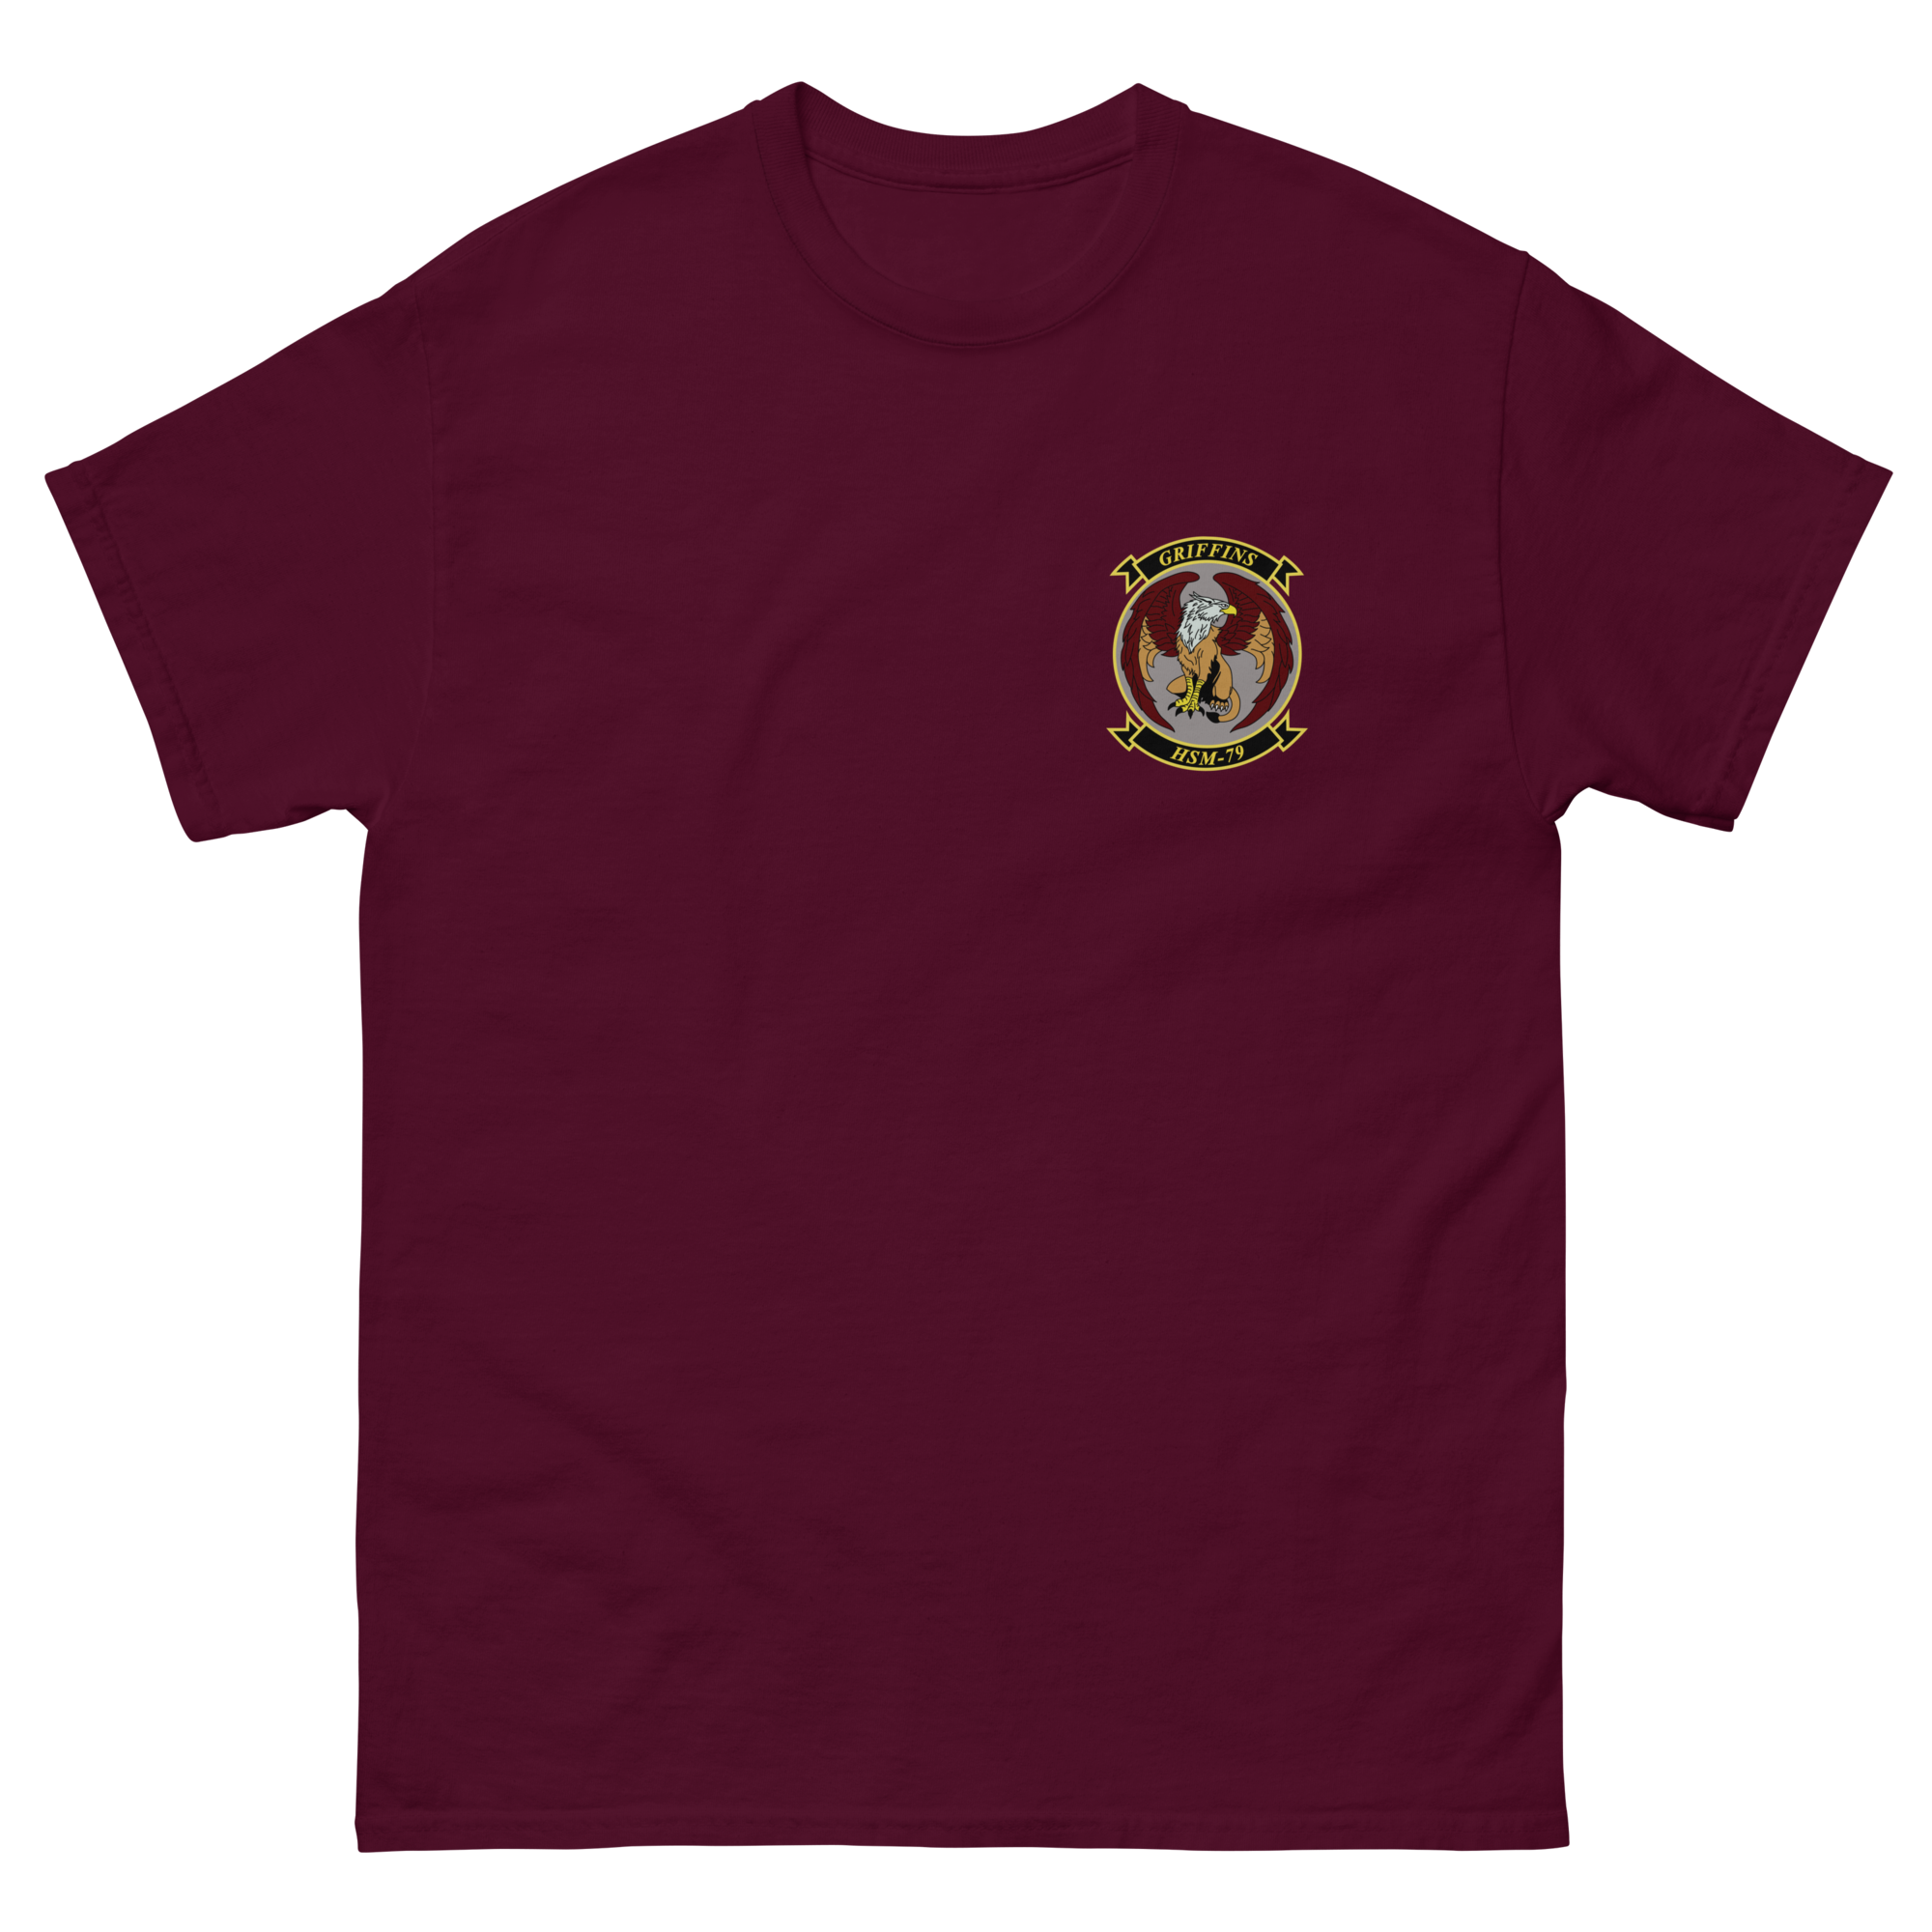 HSM-79 Griffins Squadron Crest T-Shirt